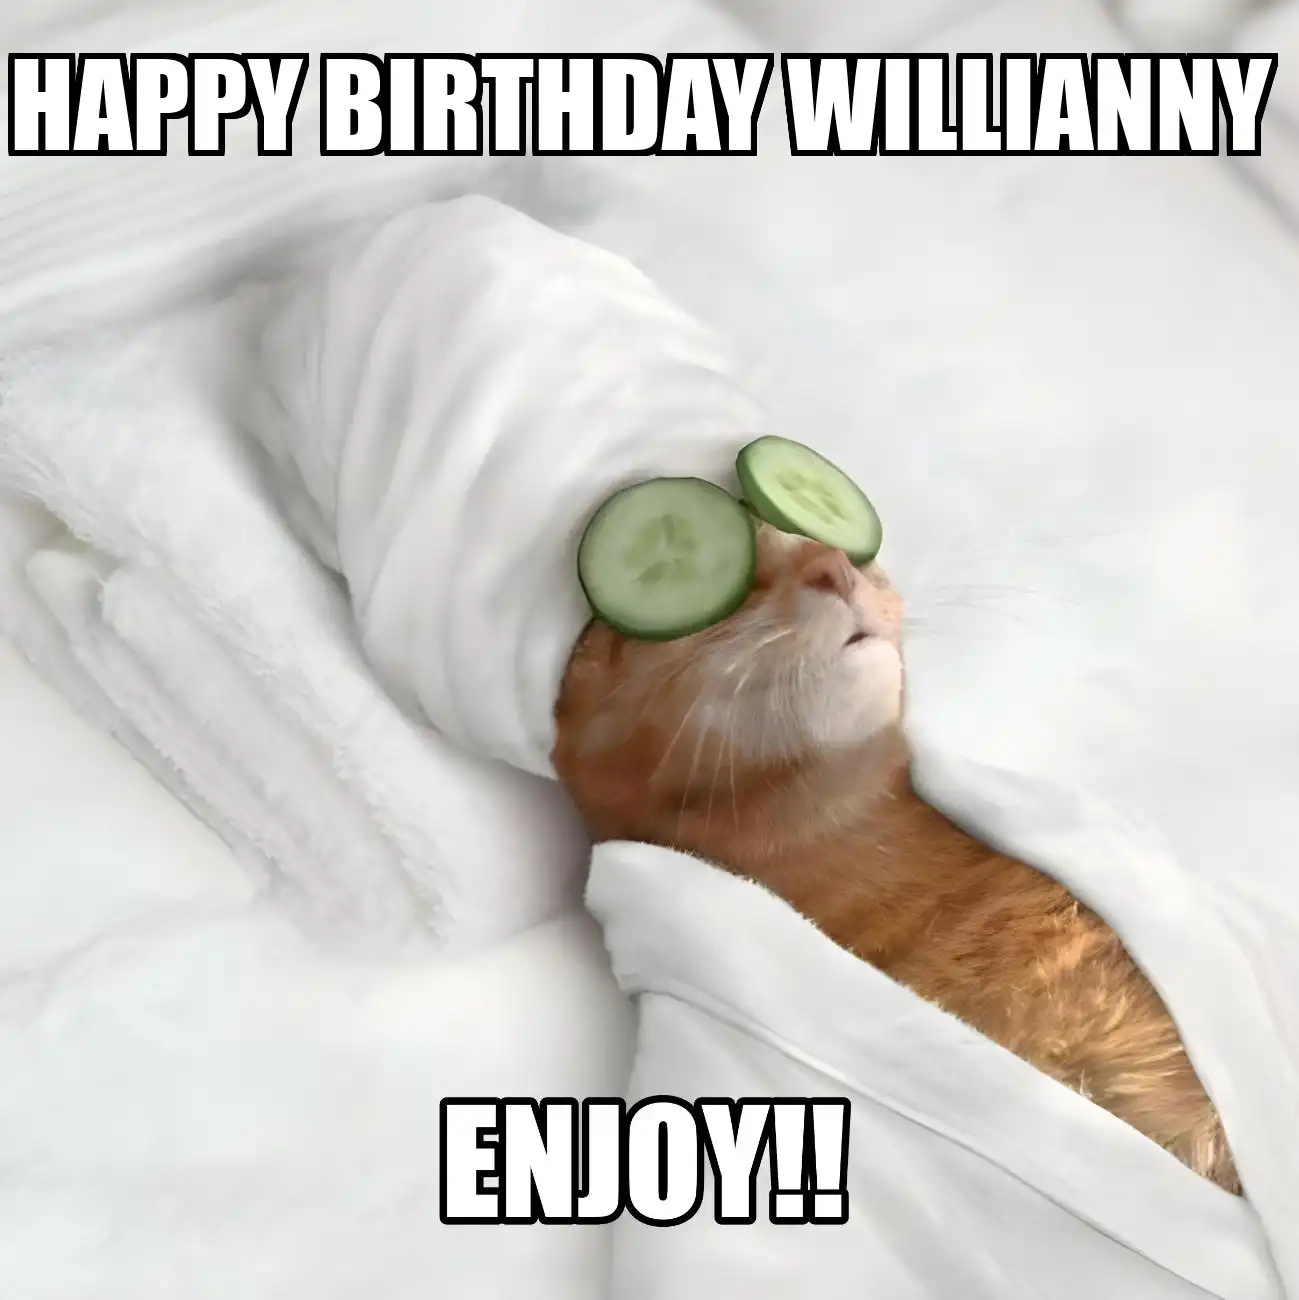 Happy Birthday Willianny Enjoy Cat Meme